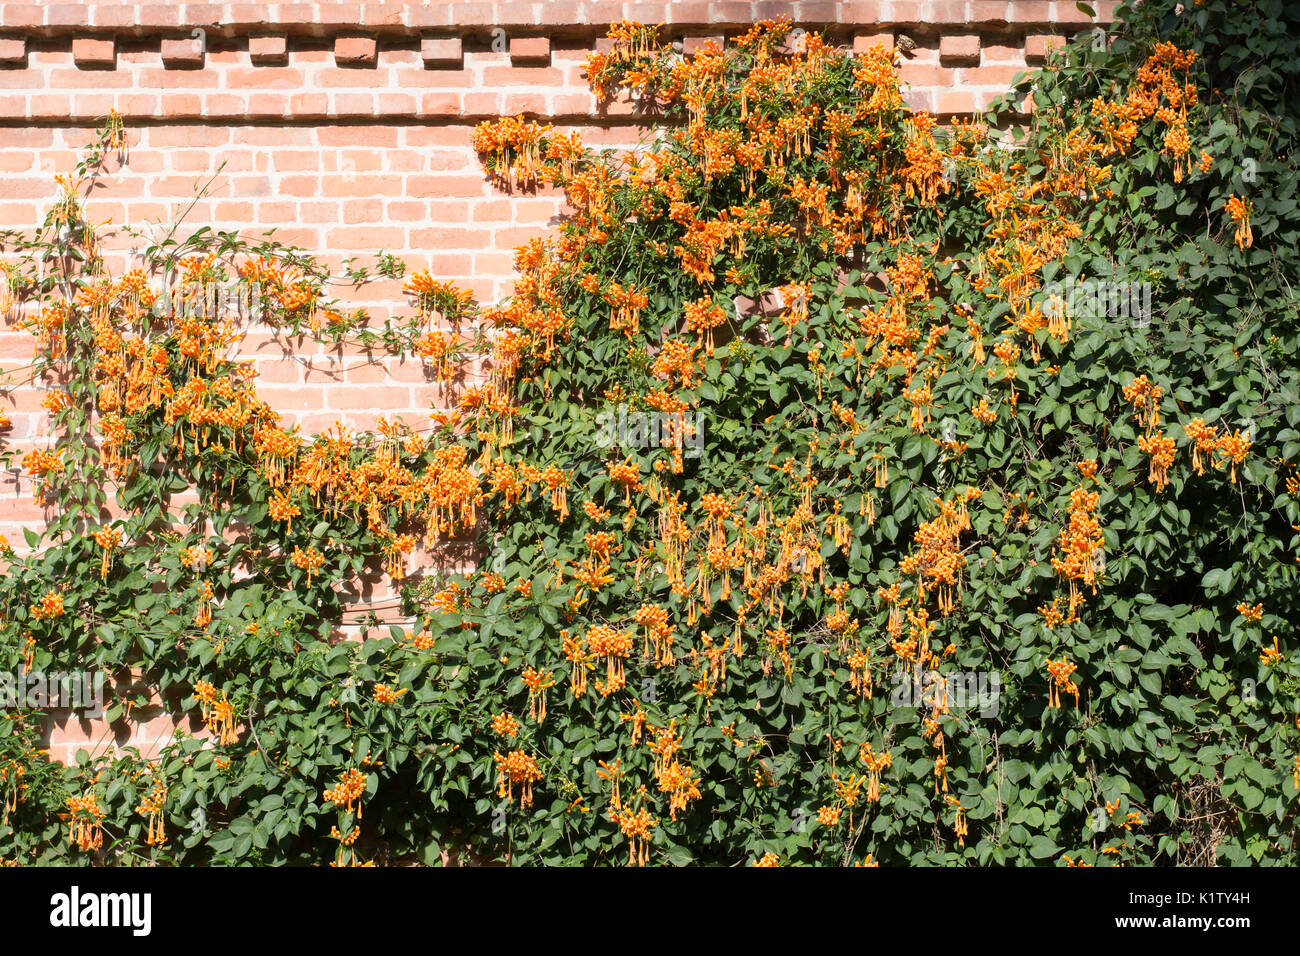 Pyrostegia venusta (gemeinhin als Flamme Rebsorten bekannt, orange trumpet Vine, goldene Dusche) in eine Mauer wächst. Argentinien, Südamerika Stockfoto